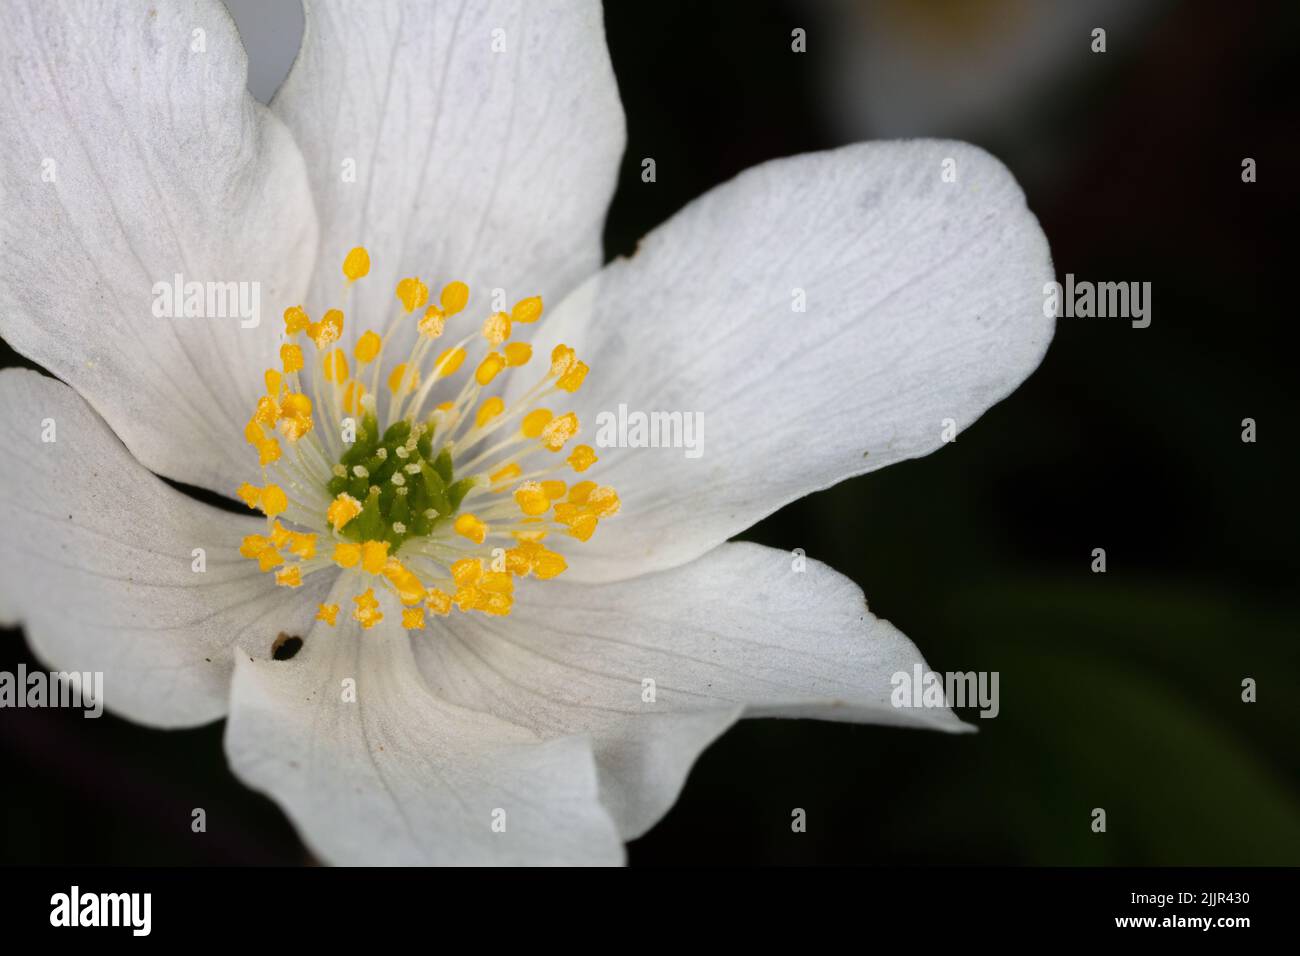 Macrophotographie de la tête de fleur blanche fragile avec accent sur les étamines jaunes Banque D'Images